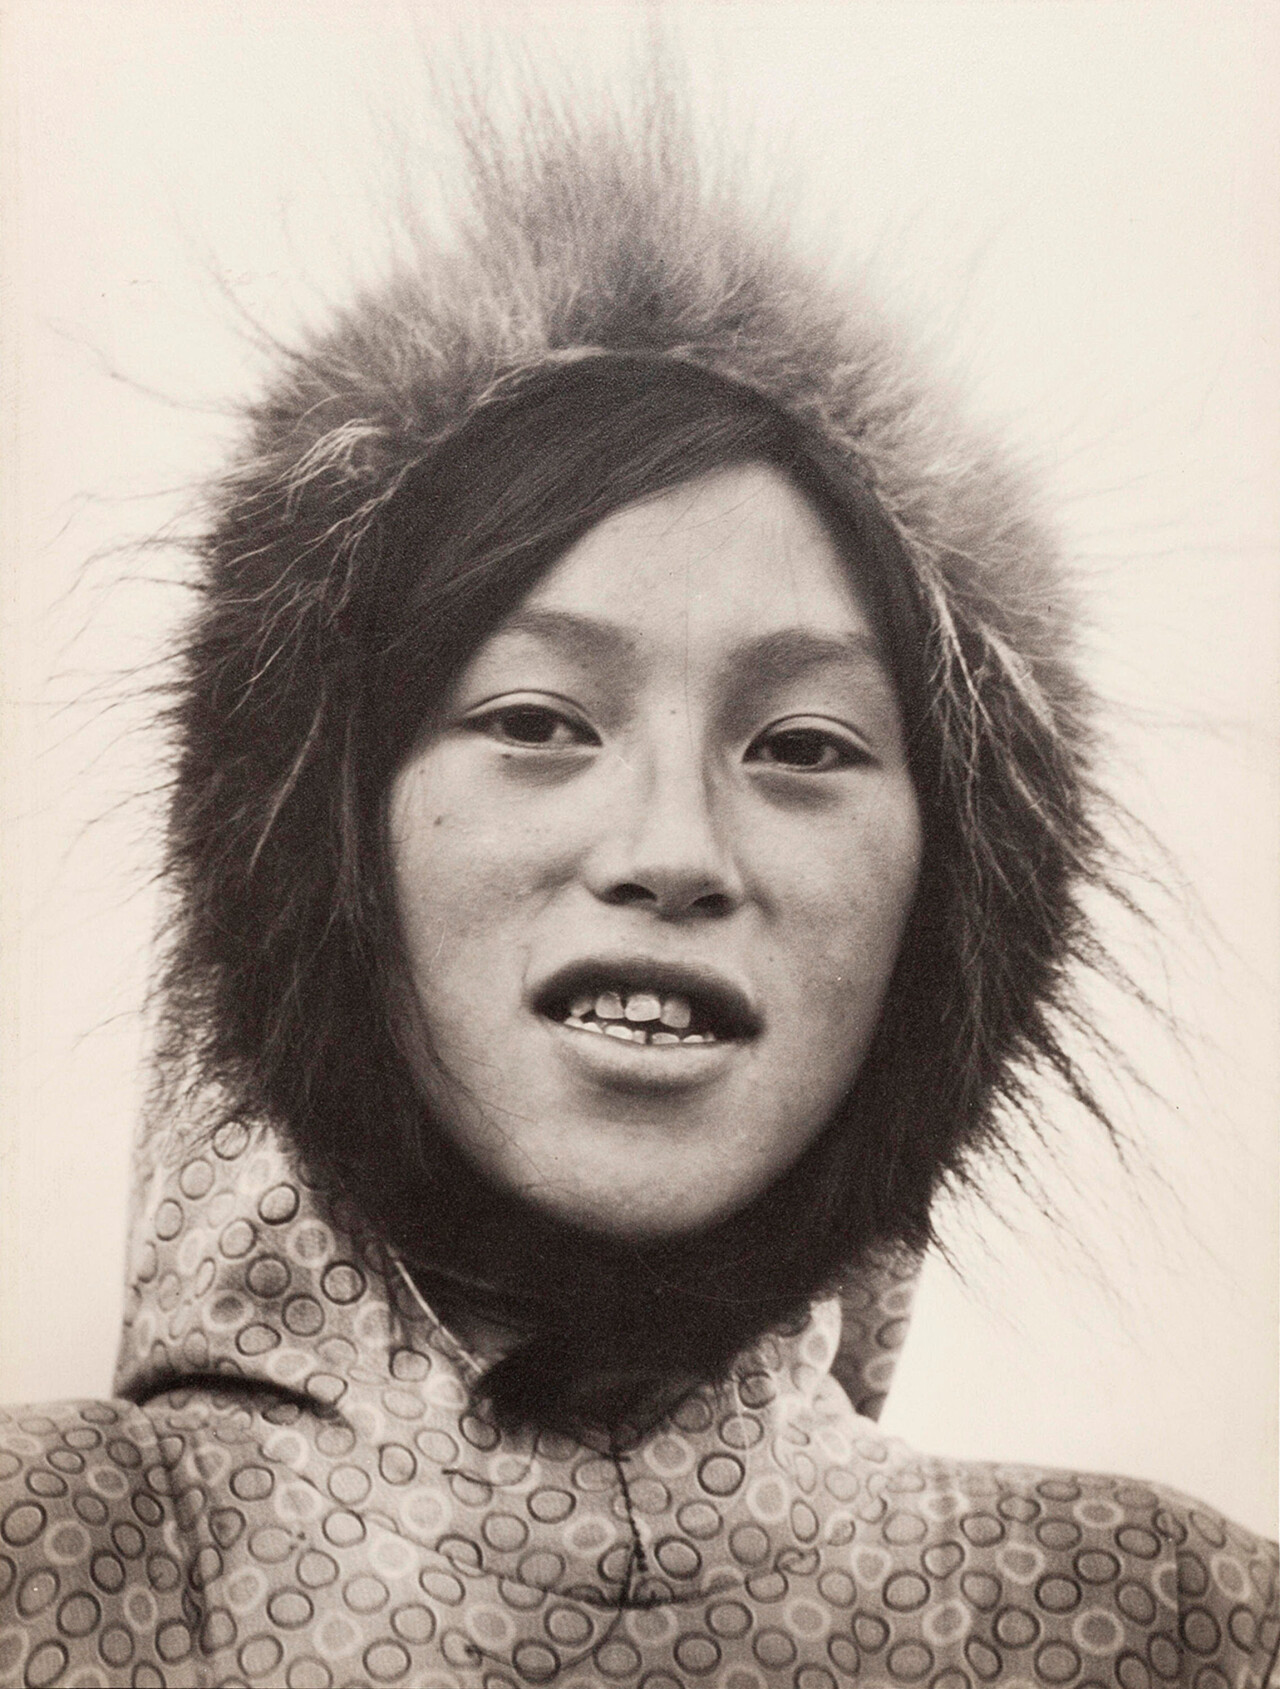 Портреты коренных американцев, Канада, 1937 год.  Фотограф Маргарет Бурк-Уайт